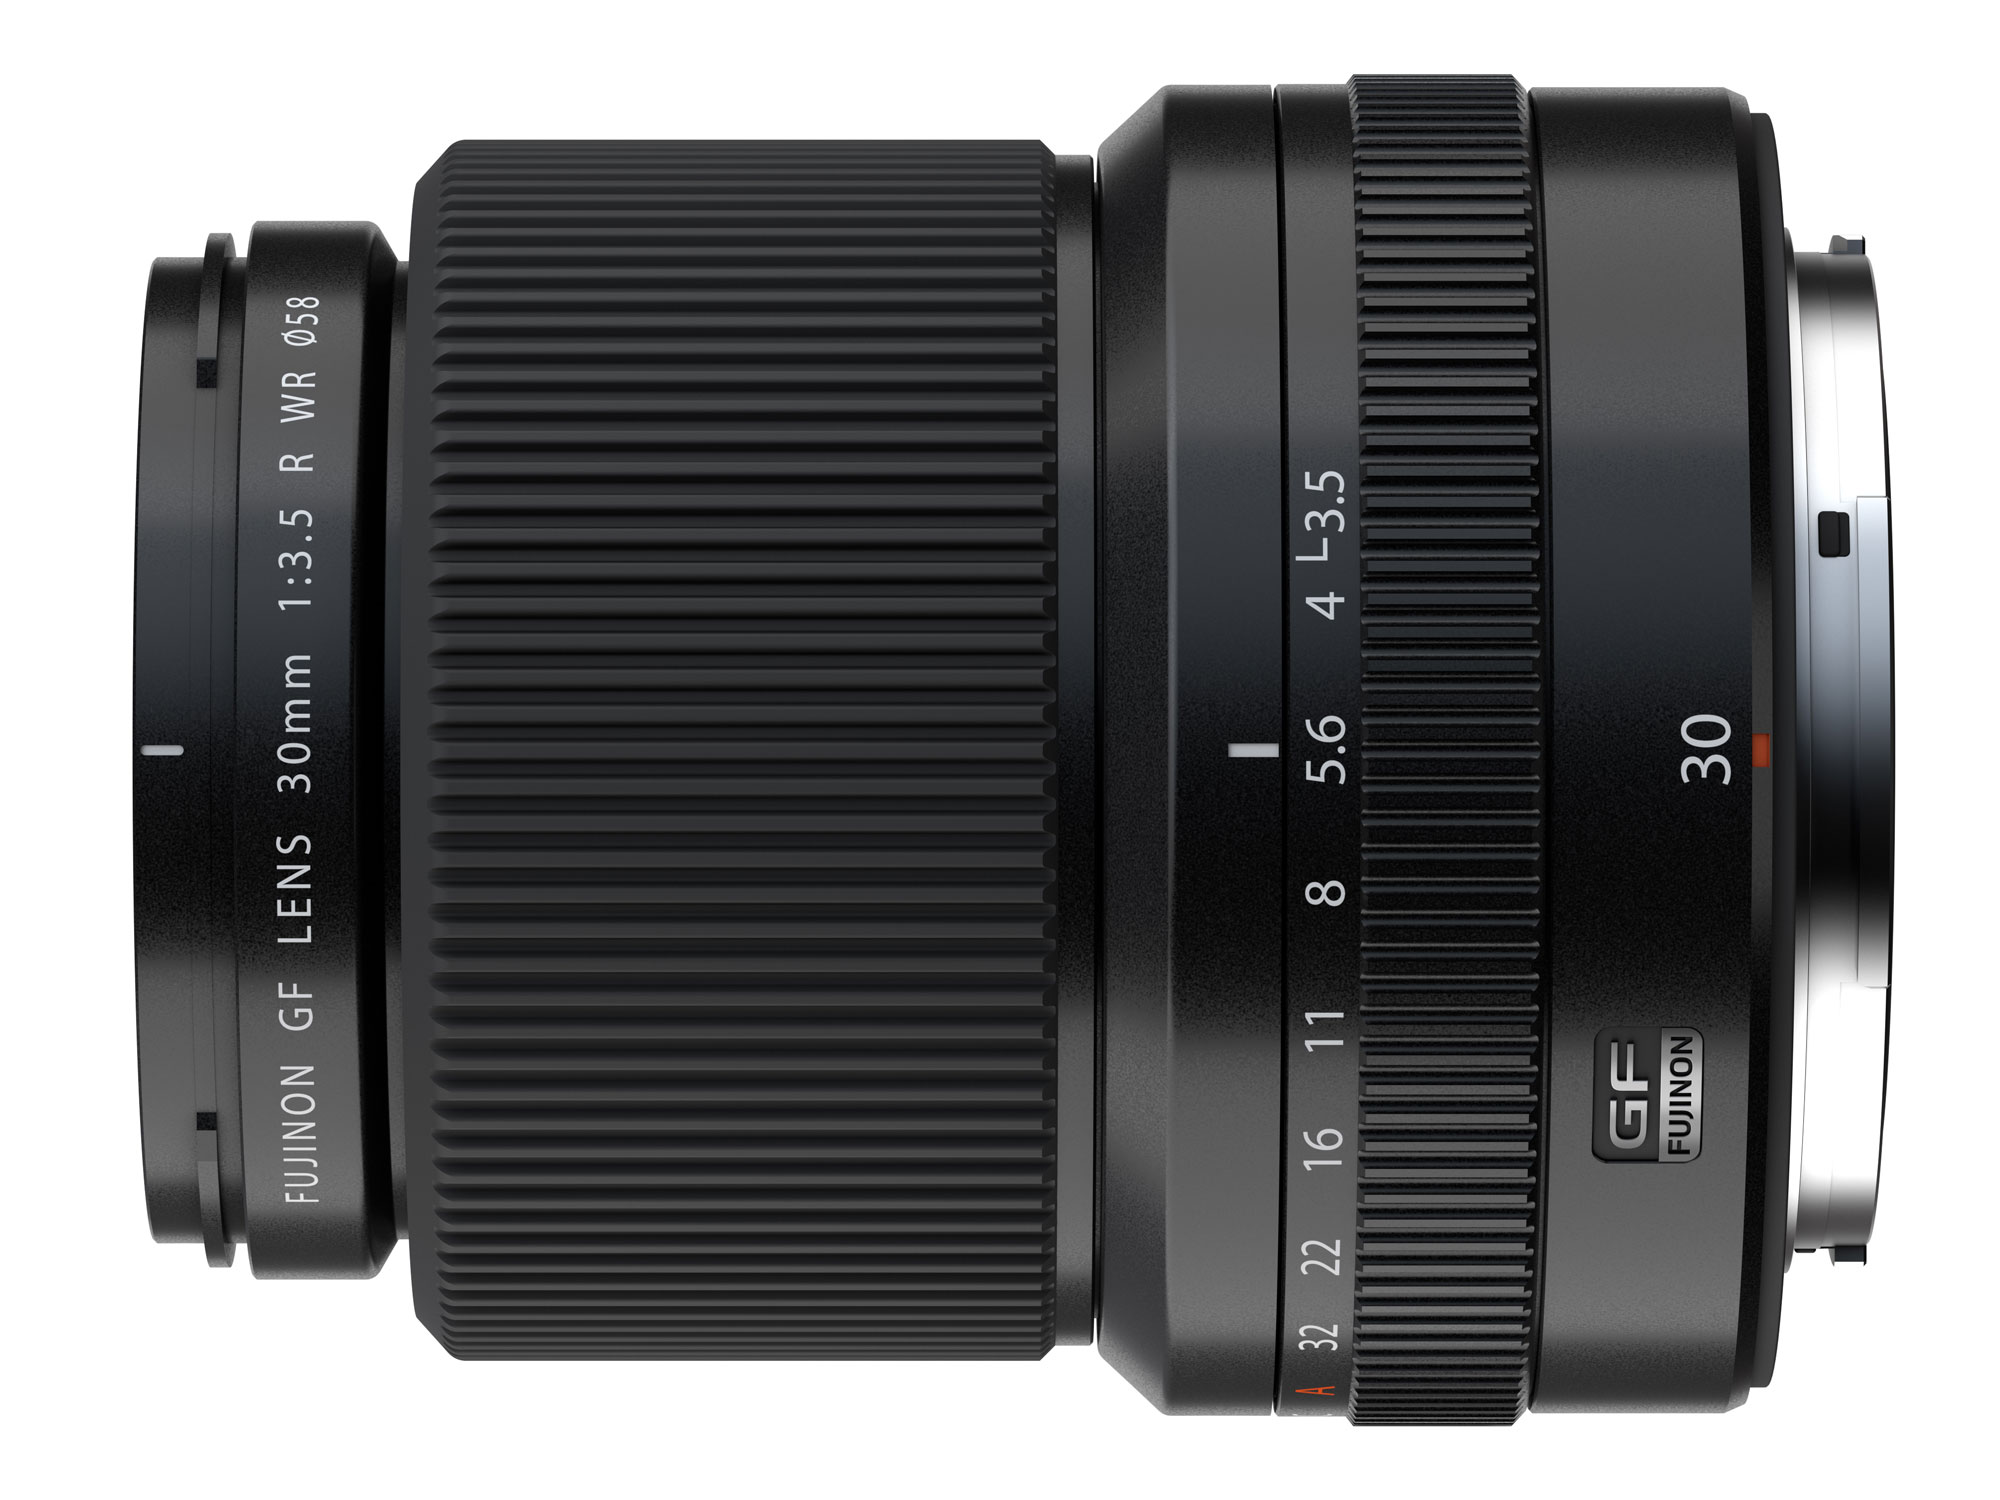 Fujifilm ra mắt ống kính GF 30mm F3.5 R WR dành cho ngàm GF